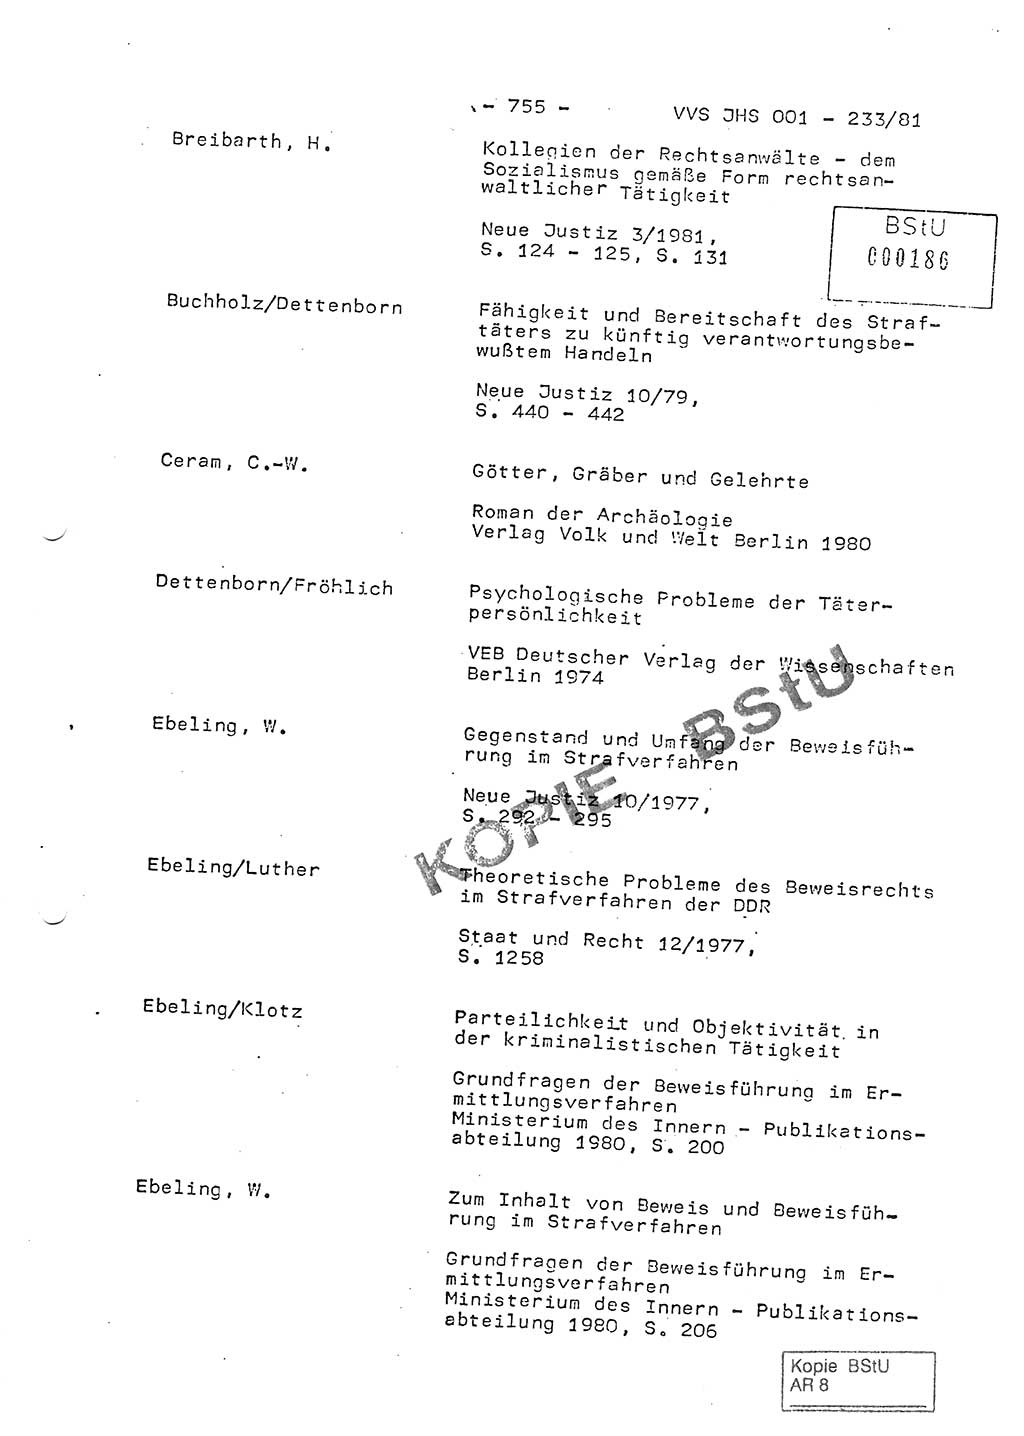 Dissertation Oberstleutnant Horst Zank (JHS), Oberstleutnant Dr. Karl-Heinz Knoblauch (JHS), Oberstleutnant Gustav-Adolf Kowalewski (HA Ⅸ), Oberstleutnant Wolfgang Plötner (HA Ⅸ), Ministerium für Staatssicherheit (MfS) [Deutsche Demokratische Republik (DDR)], Juristische Hochschule (JHS), Vertrauliche Verschlußsache (VVS) o001-233/81, Potsdam 1981, Blatt 755 (Diss. MfS DDR JHS VVS o001-233/81 1981, Bl. 755)